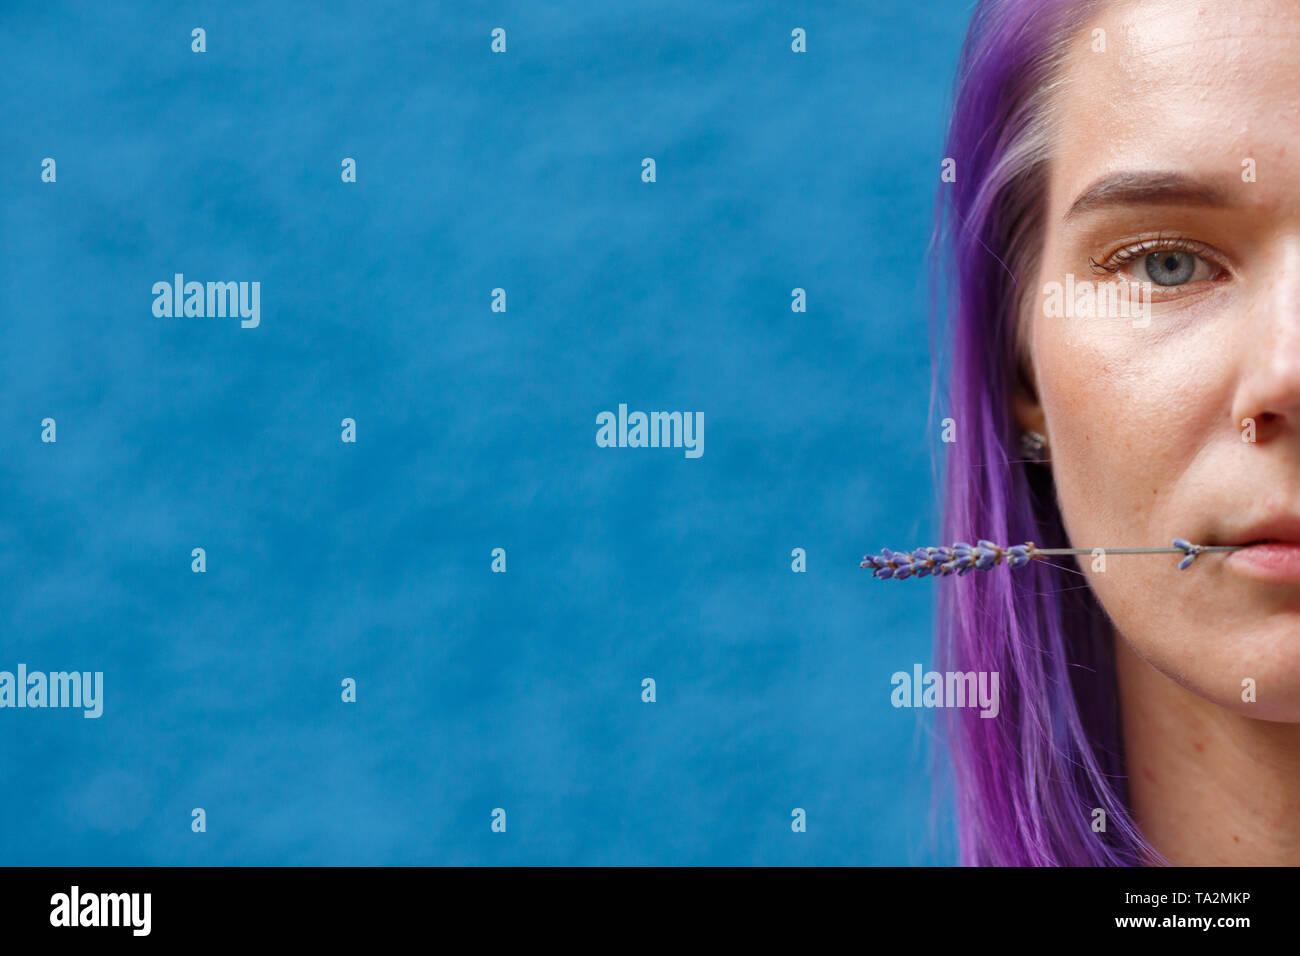 Nahaufnahme Einer Weiblicher Kopf Gefarbt Lila Haare Ein Lavendel Blume Mit Ihren Lippen Blauen Hintergrund Freespace Stockfotografie Alamy